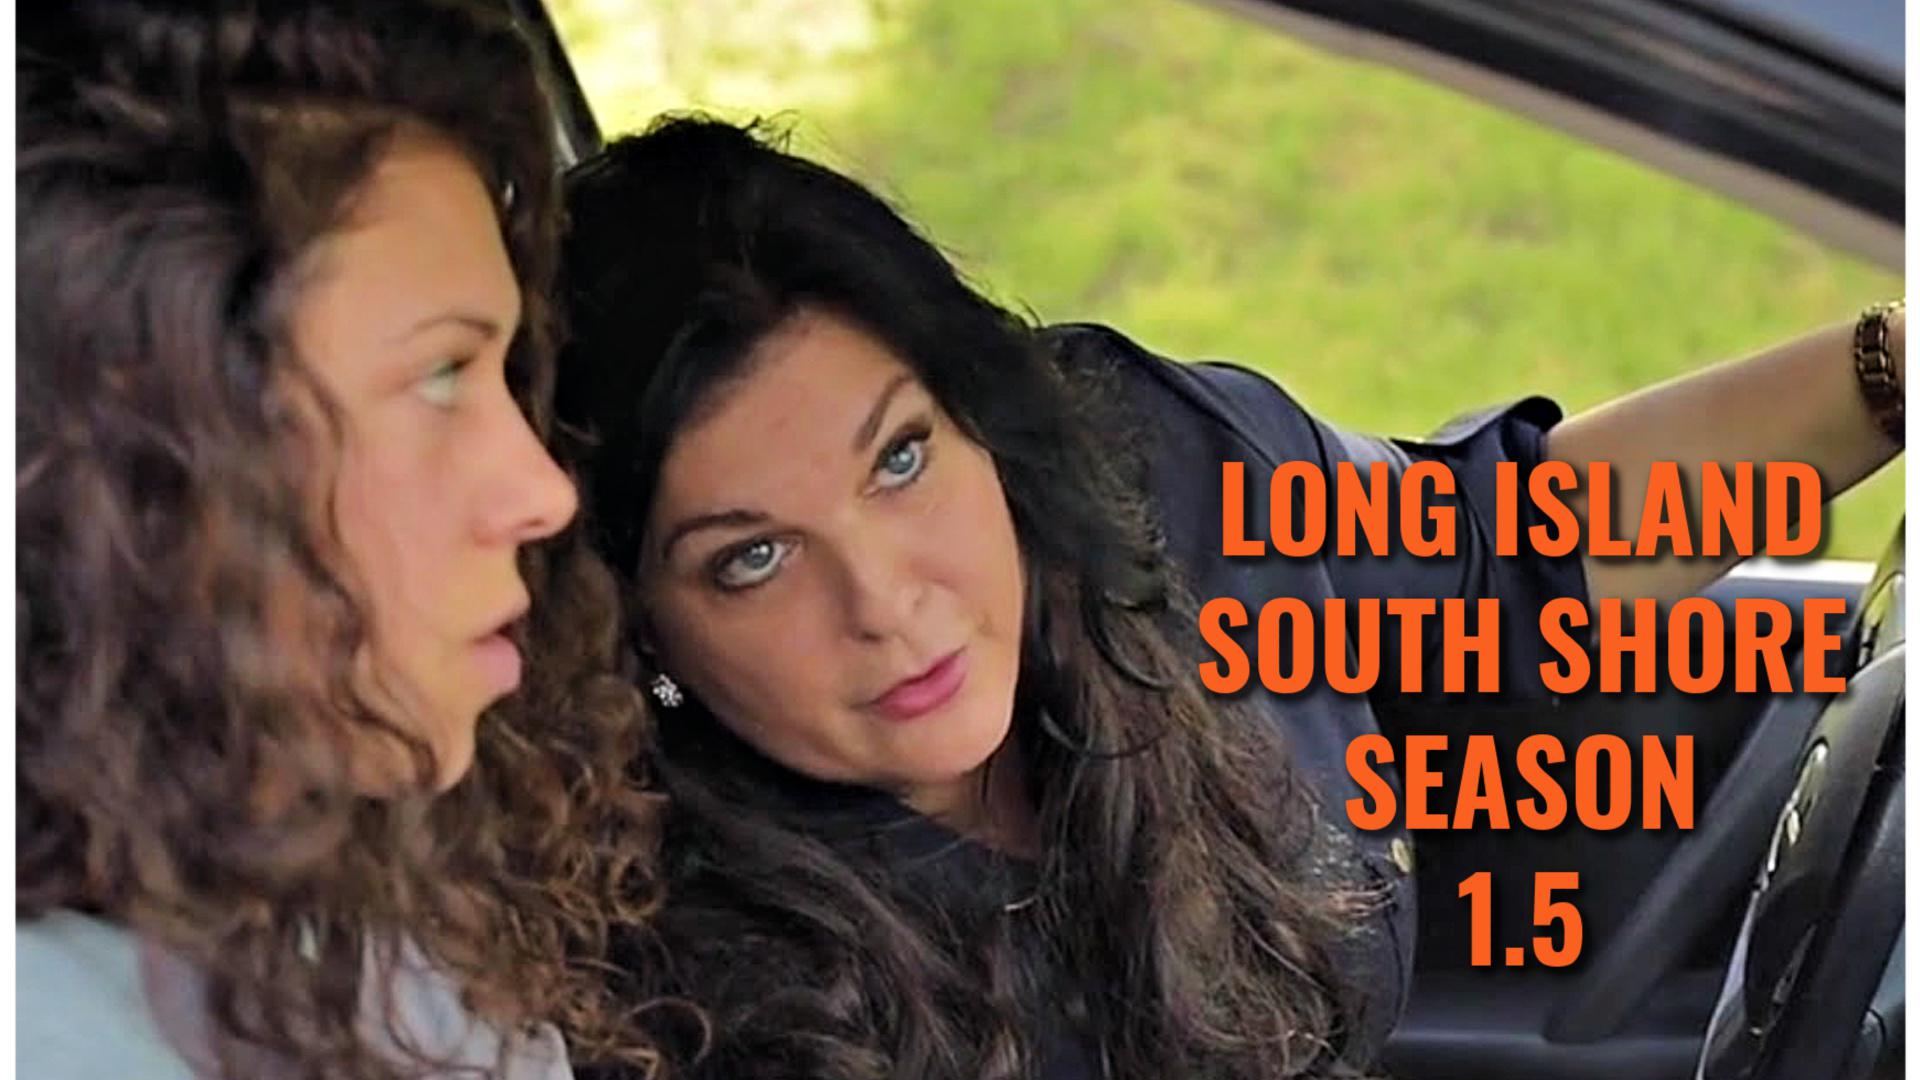 Long Island South Shore (Season 1.5)